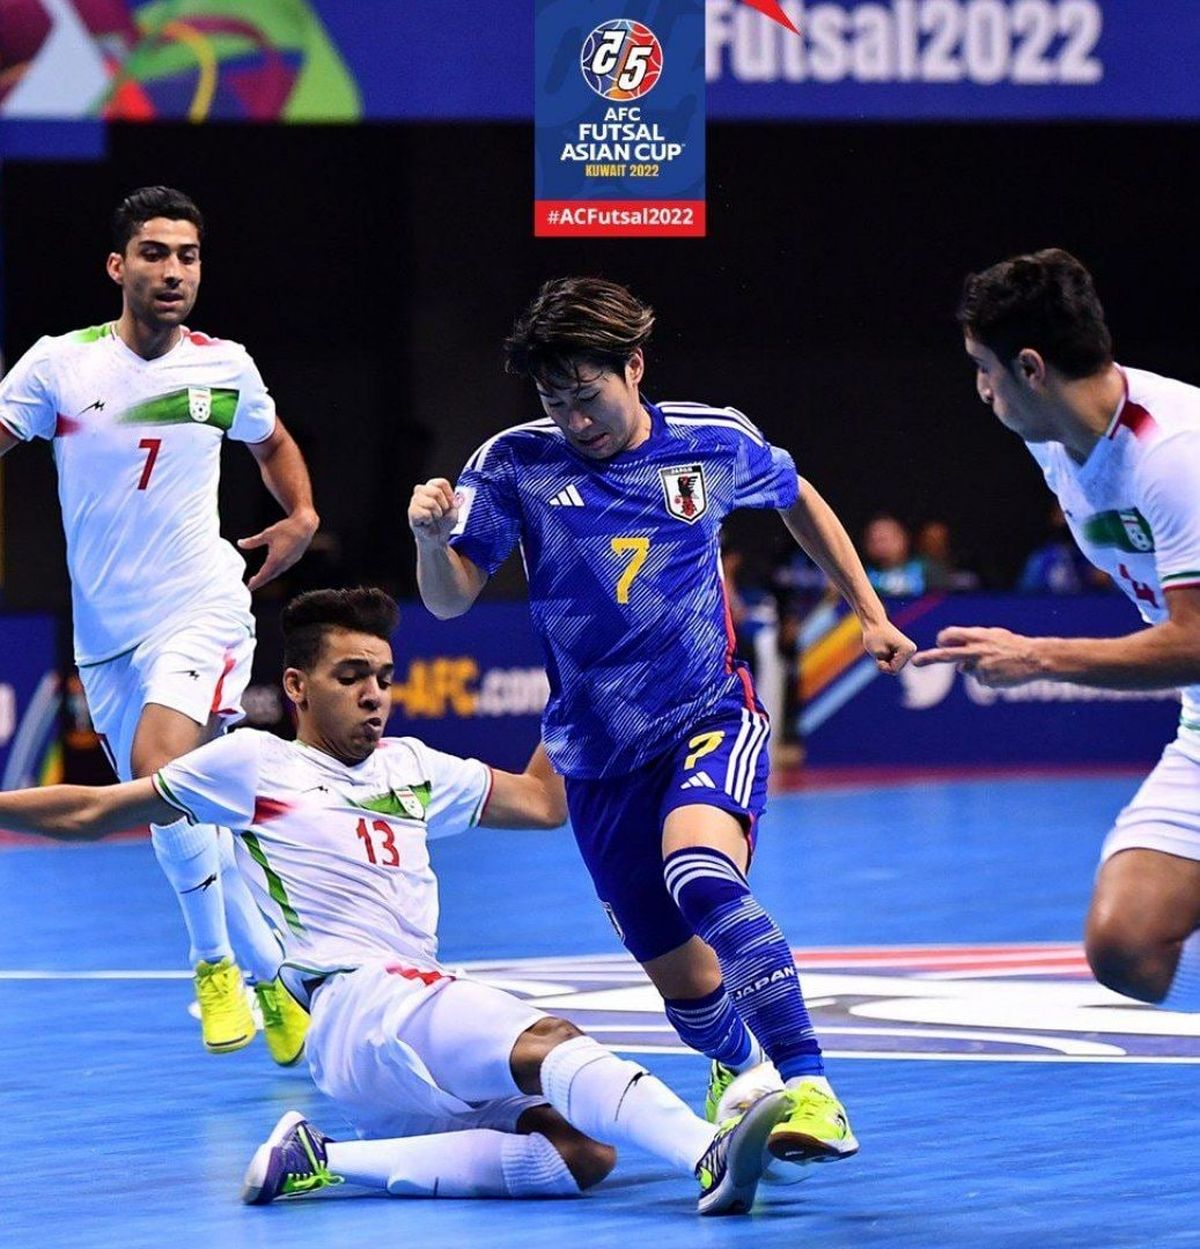 دست شاگردان شمسایی به جام نرسید/ ژاپن قهرمان جام ملت های فوتسال آسیا شد/ ویدئو